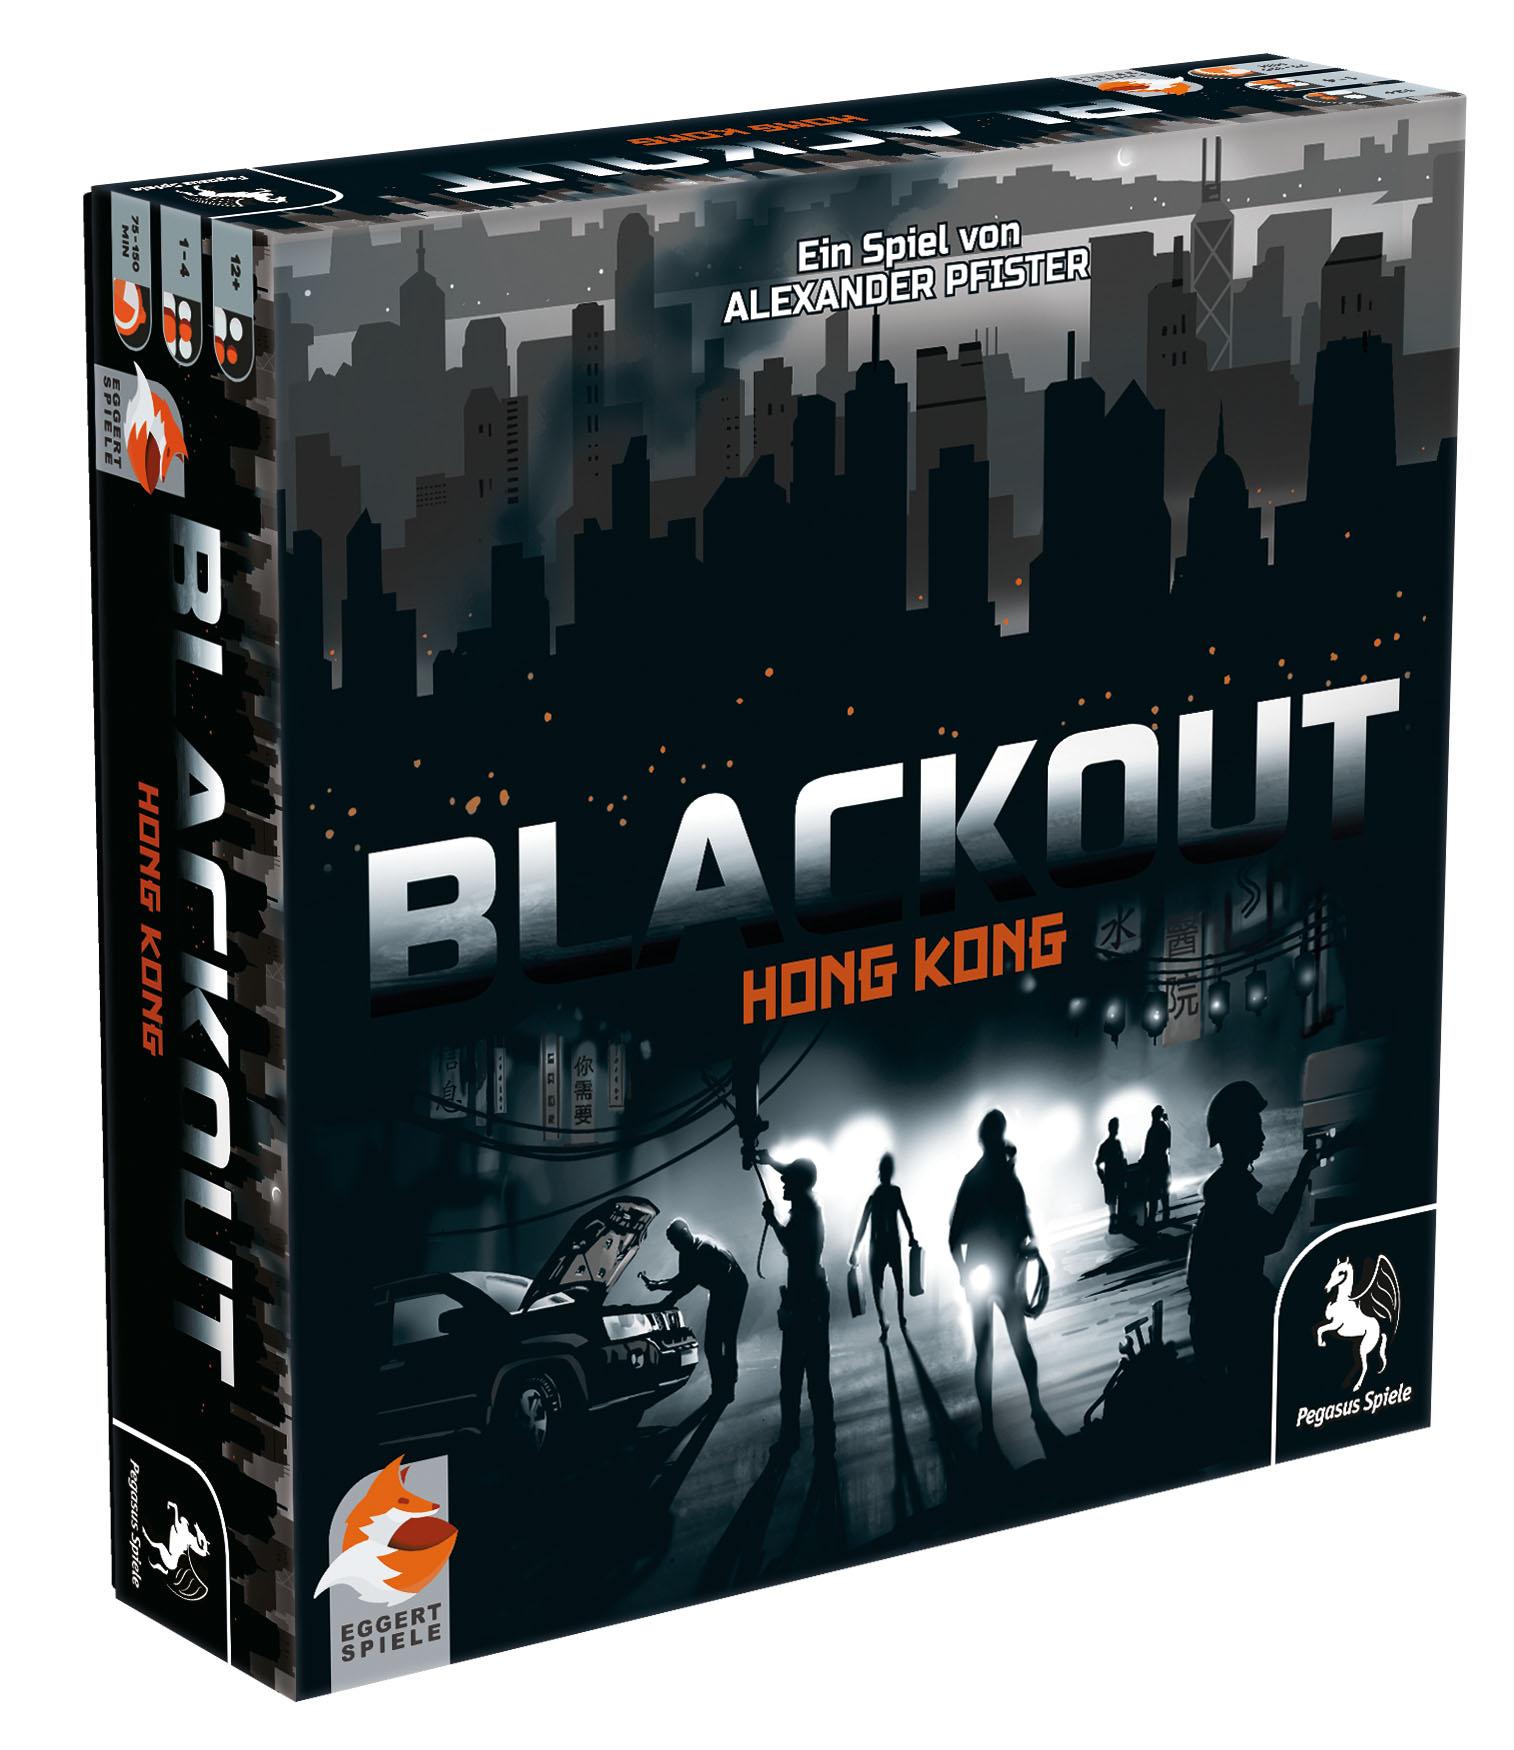 Blackout - Hong Kong